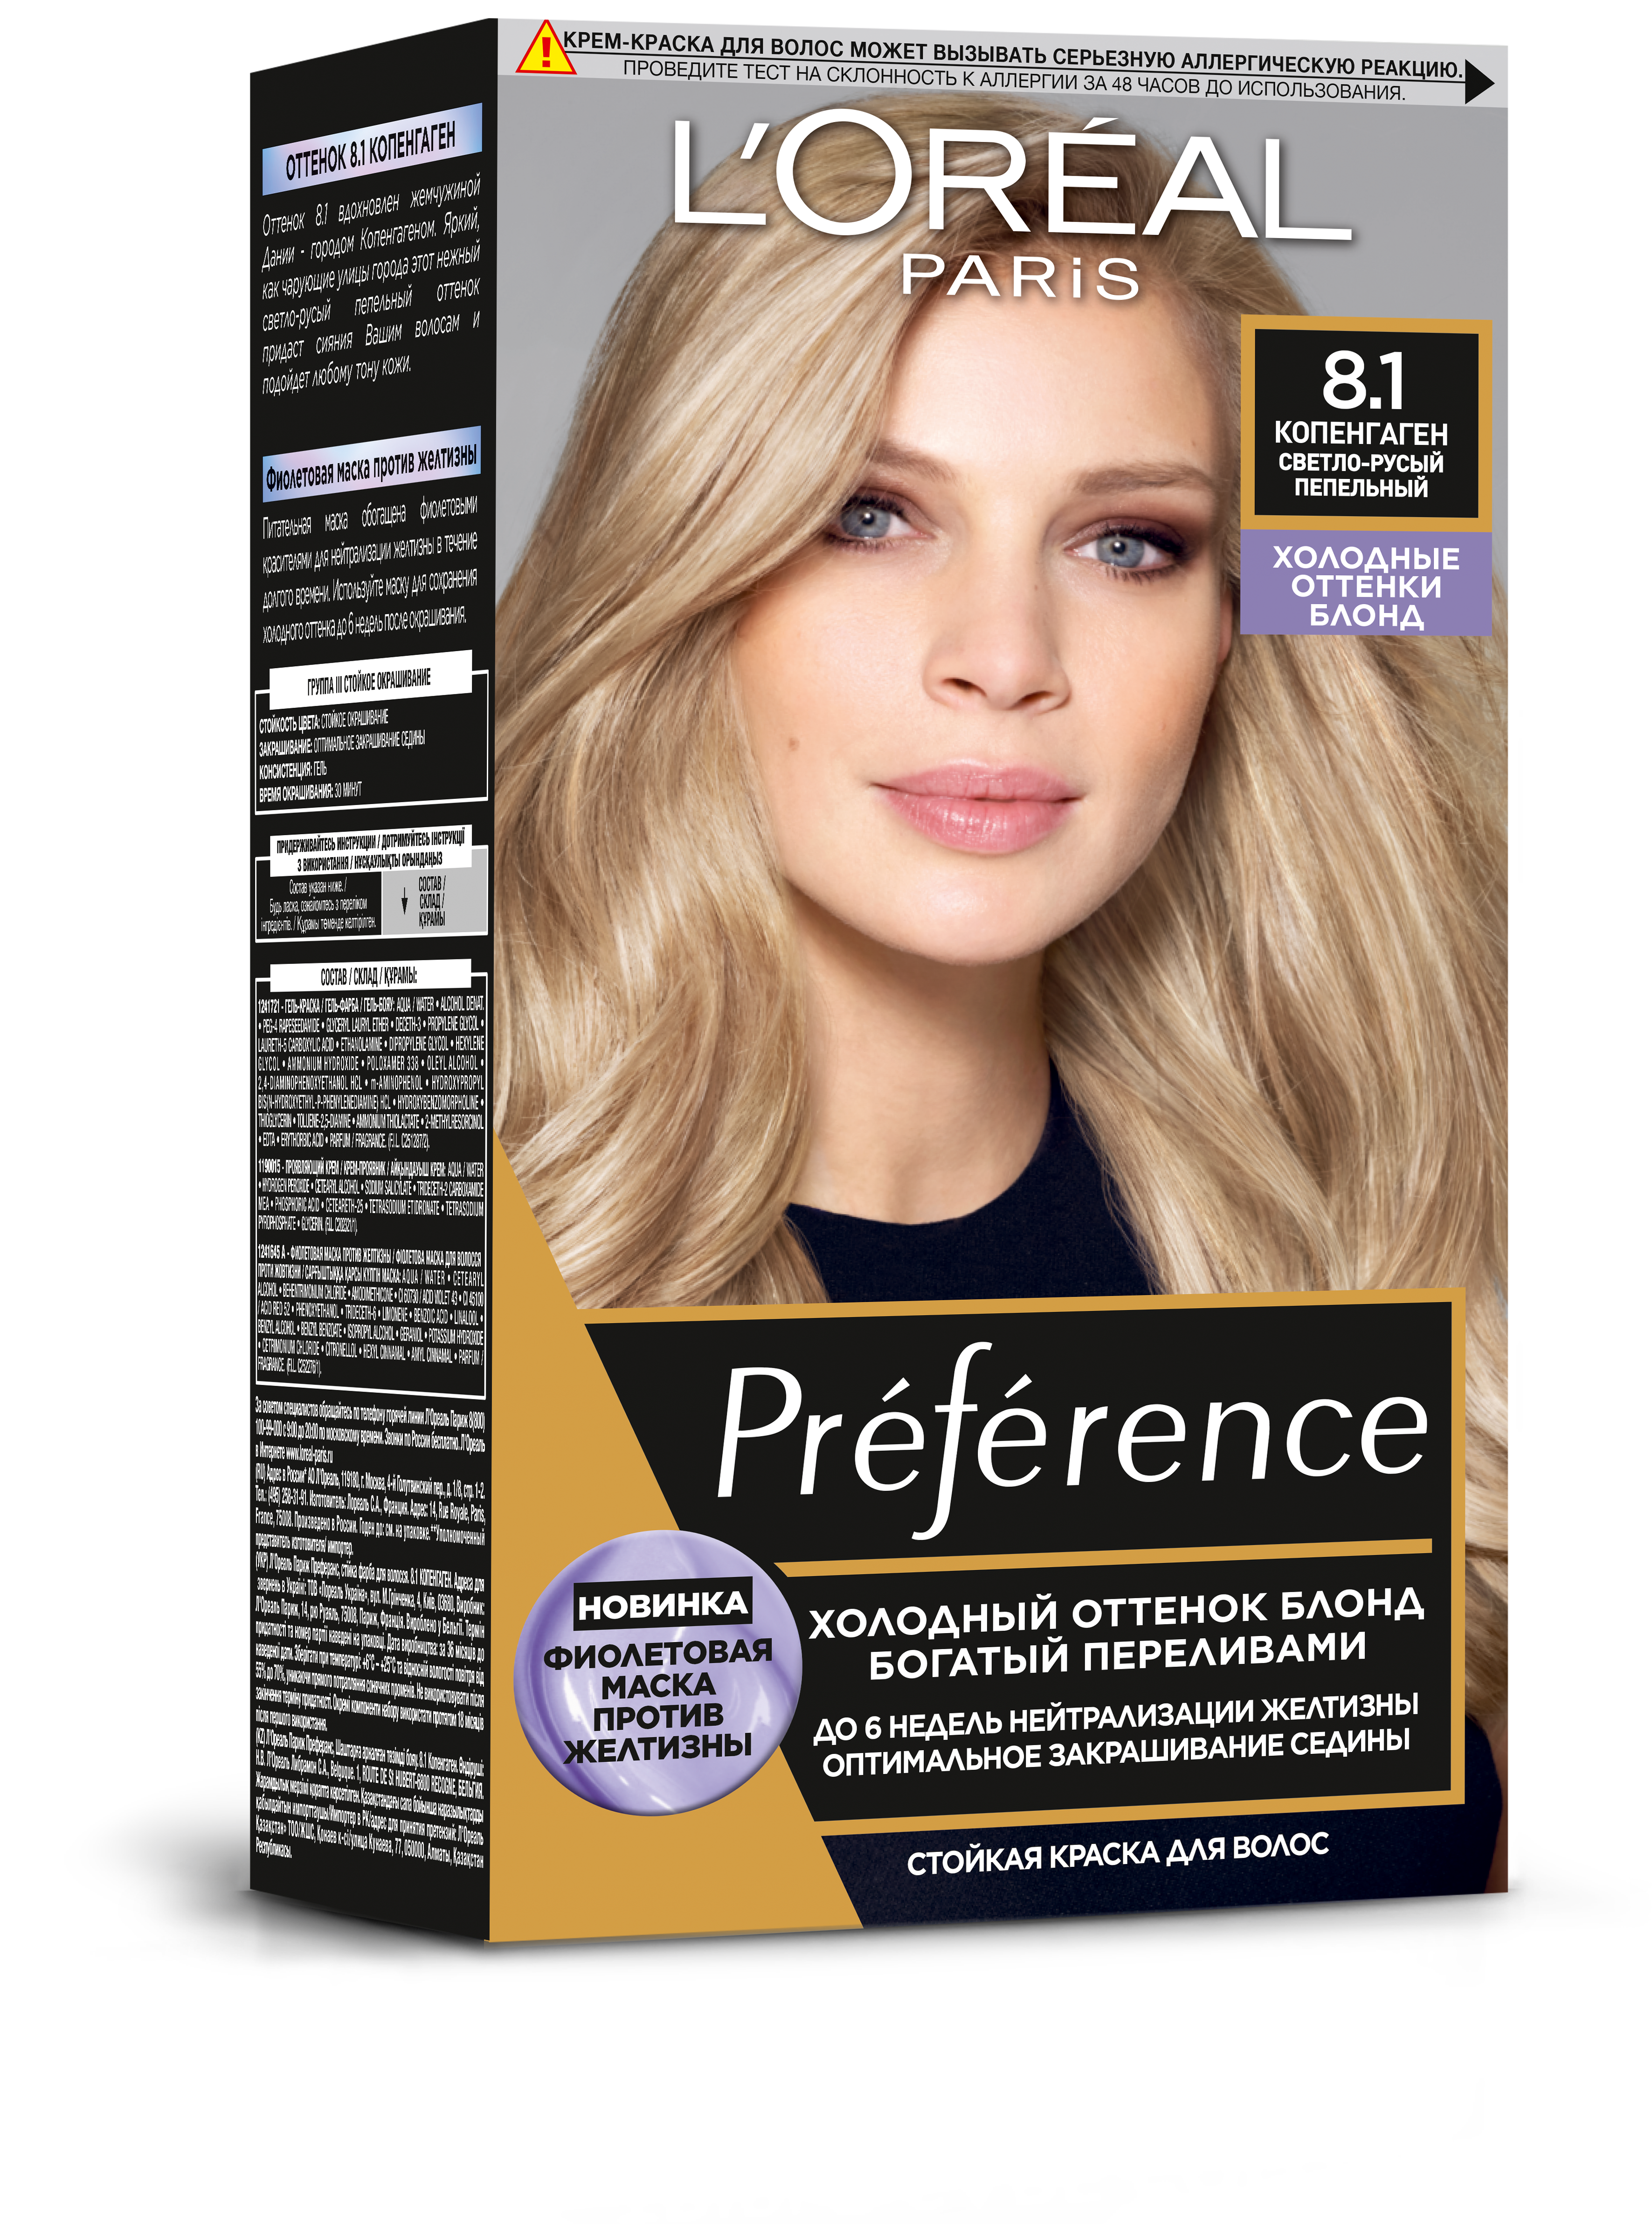 Краска для волос L’Oréal Paris Preference, тон 8.1 (Копенгаген), 174 мл (AA180600) - фото 1